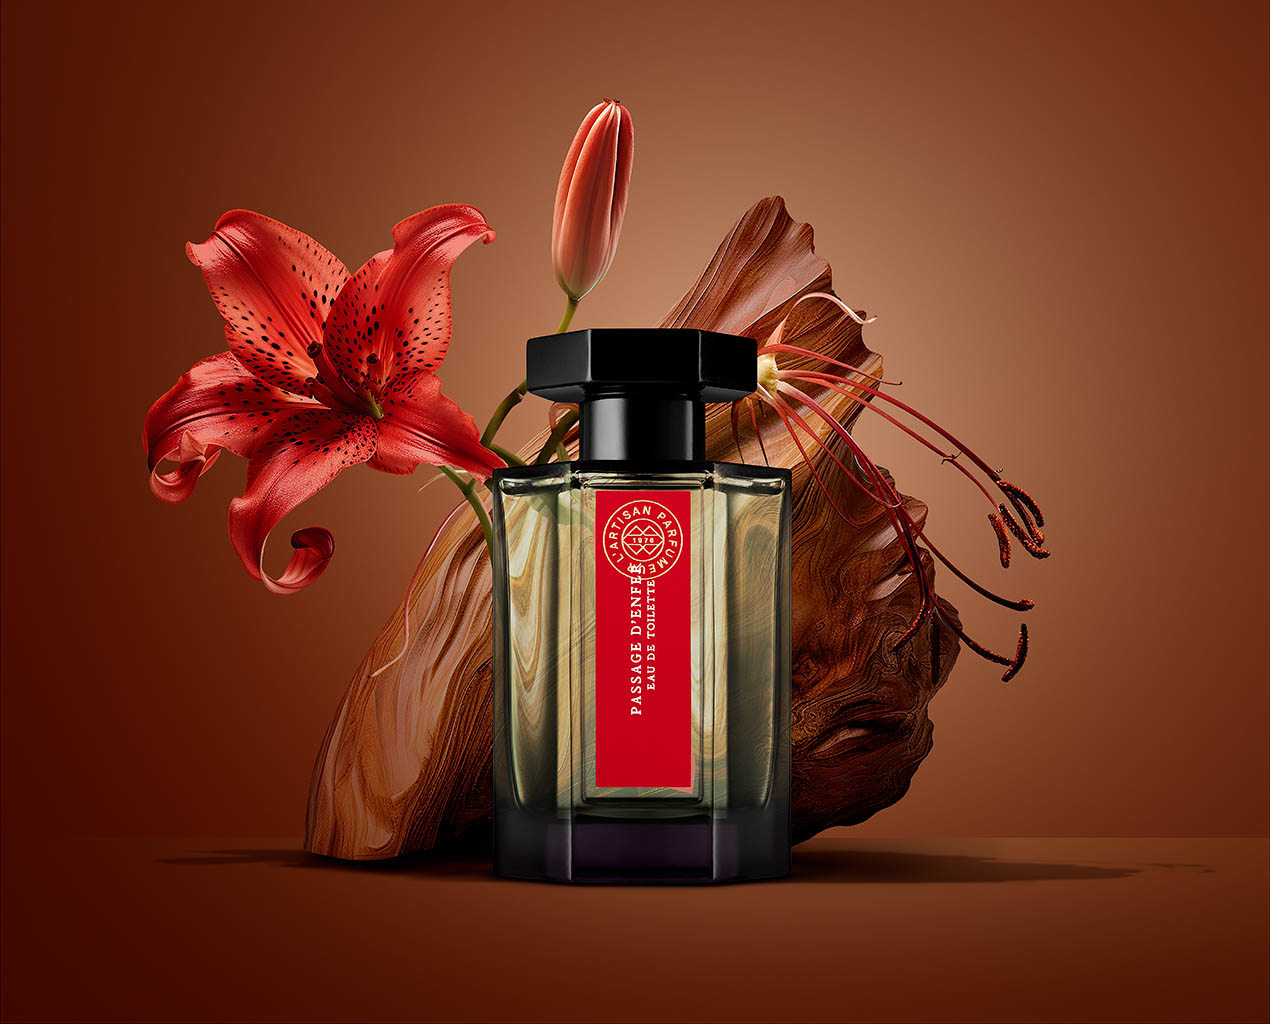 Packshot Factory - Coloured background - L'Artisan Parfumeur Passage d'enfer